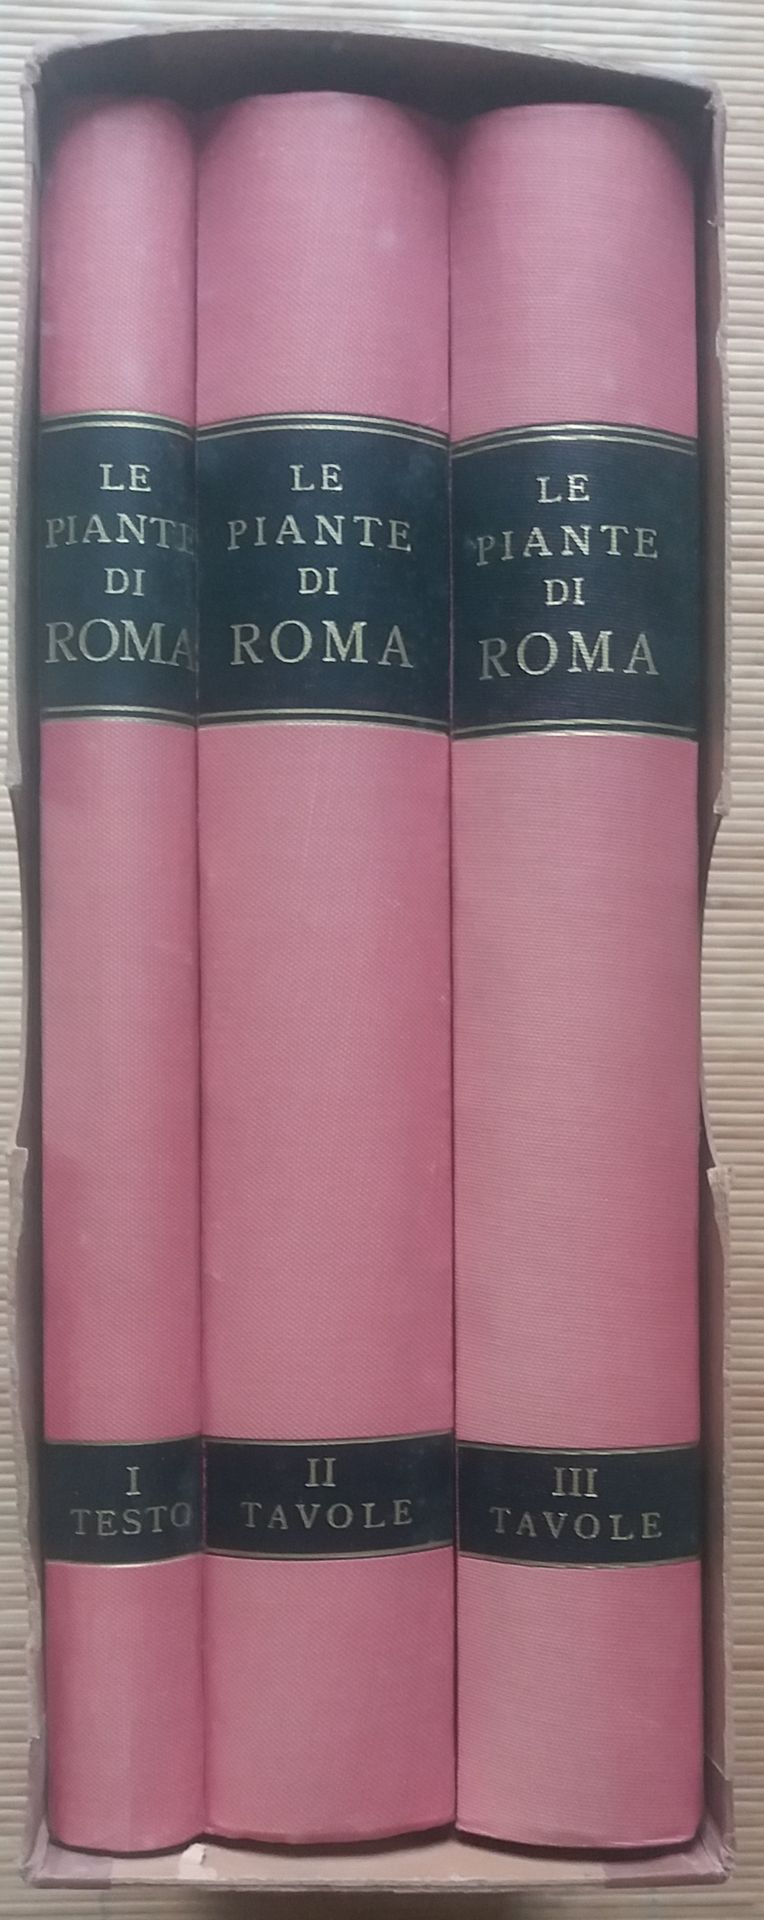 Null [ART - ROME]
1 ouvrage en 3 tomes.

*Le Piante di Roma.
A cura di Amato Pie&hellip;